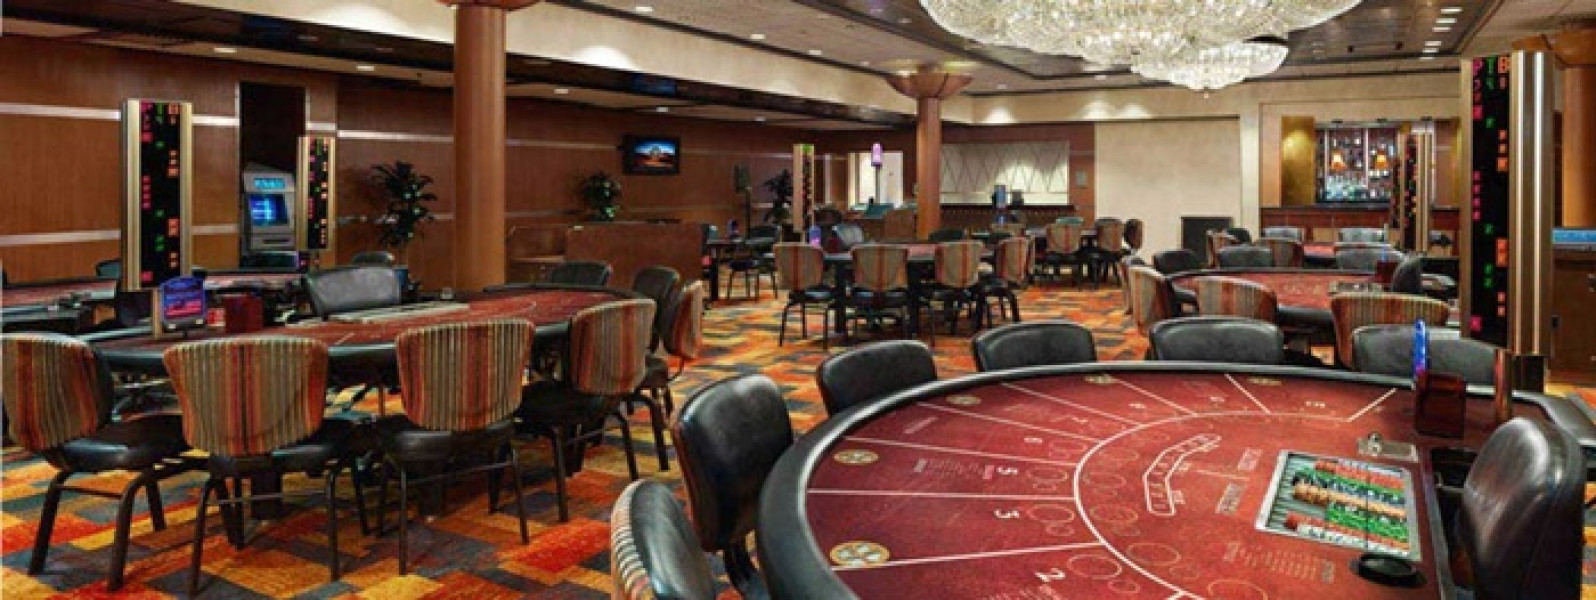 ameristar casino application online